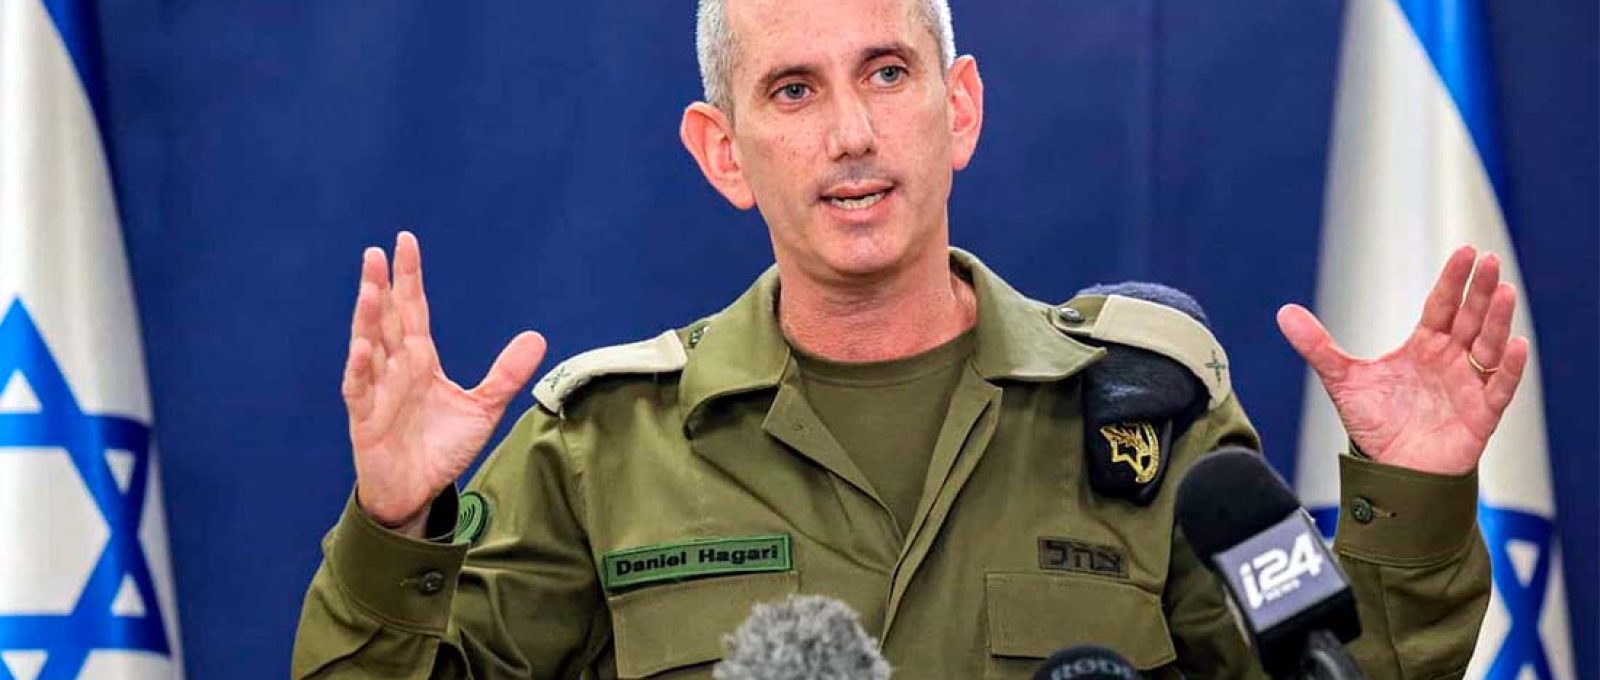 Porta-voz das Forças de Defesa de Israel (IDF), Daniel Hagari (Gil Cohen-Magen/AFP).